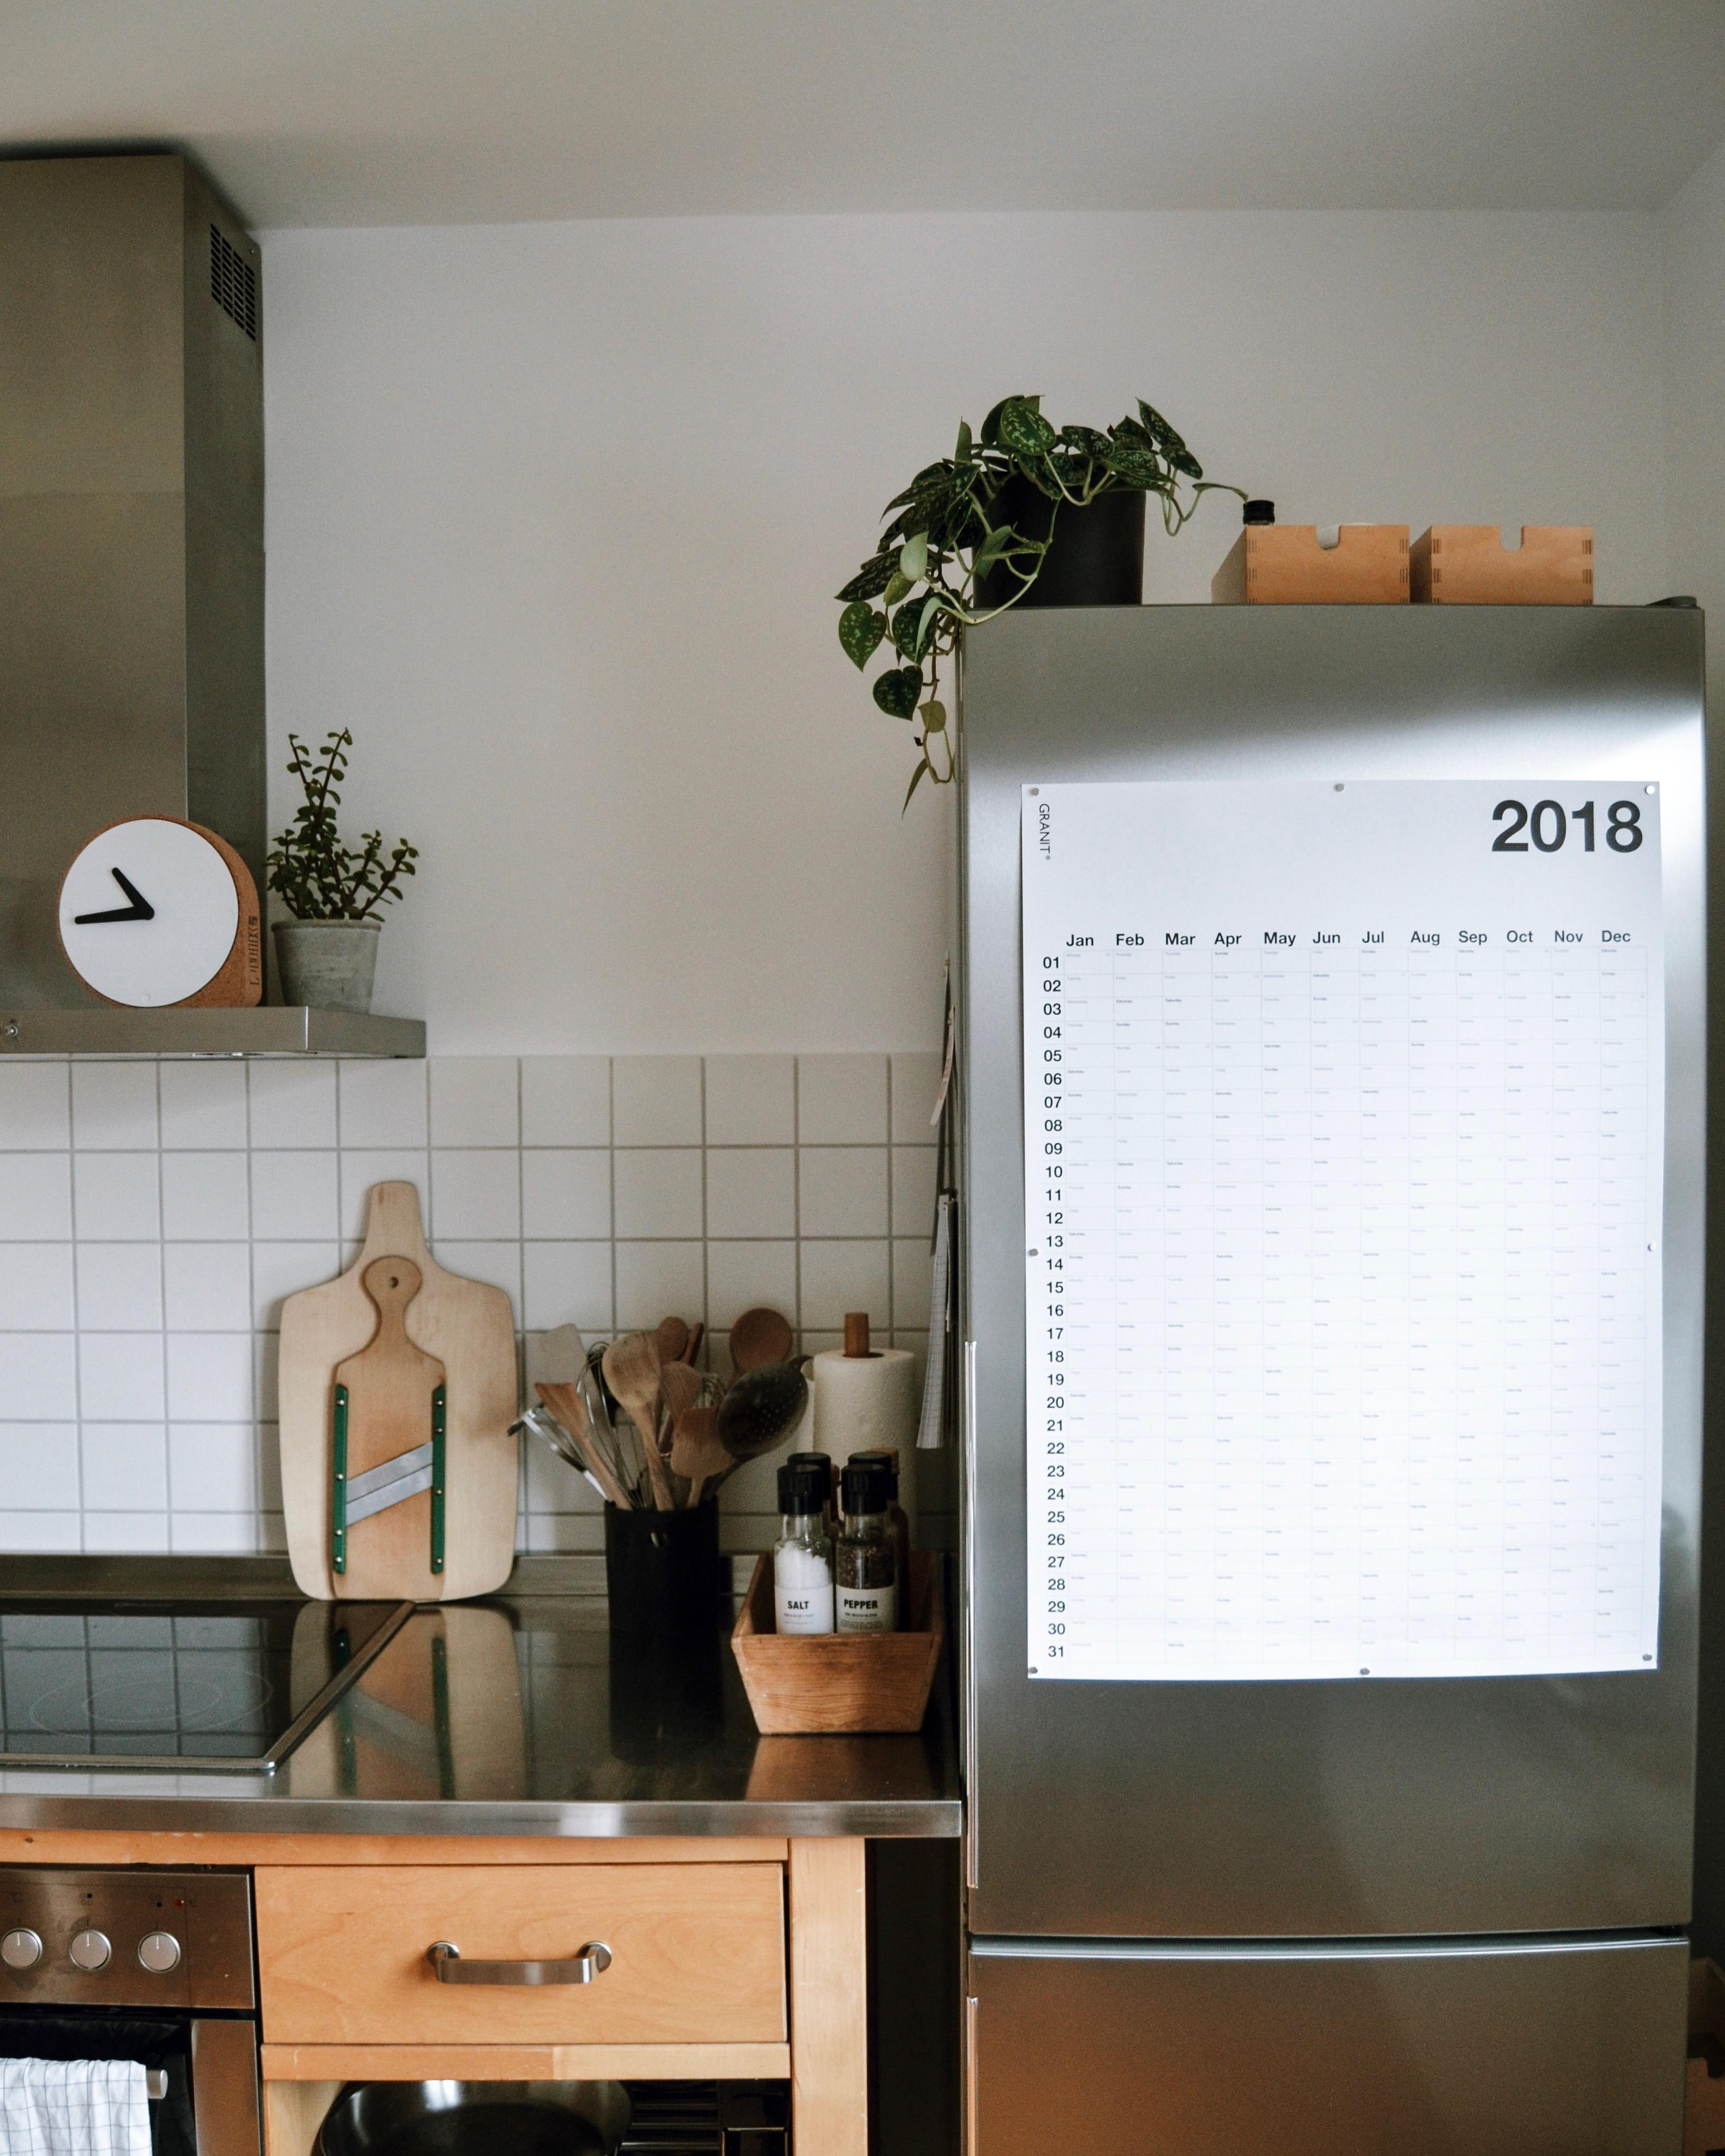 Bereit für 2018. 🖤 #newyear #calendar #2018 #kitchen #ikea #värde